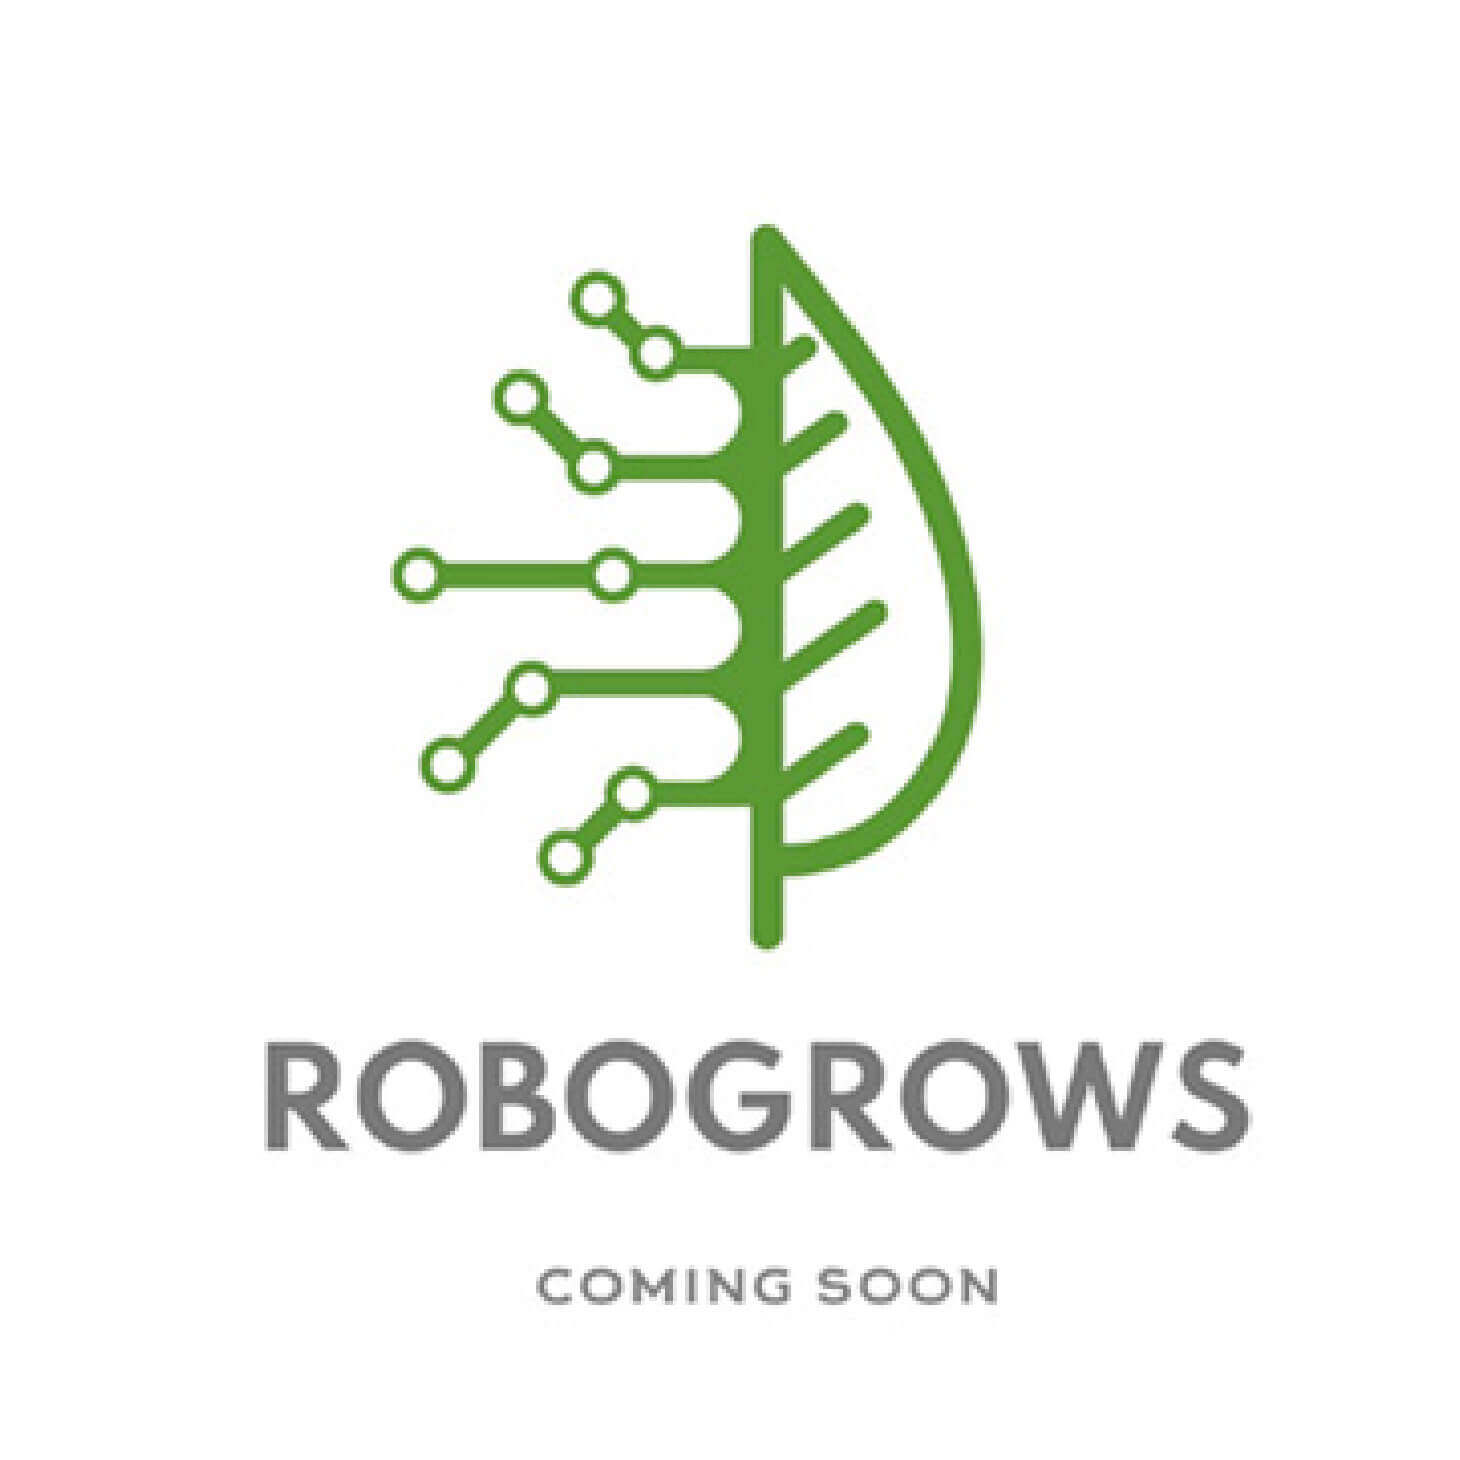 Robogrows